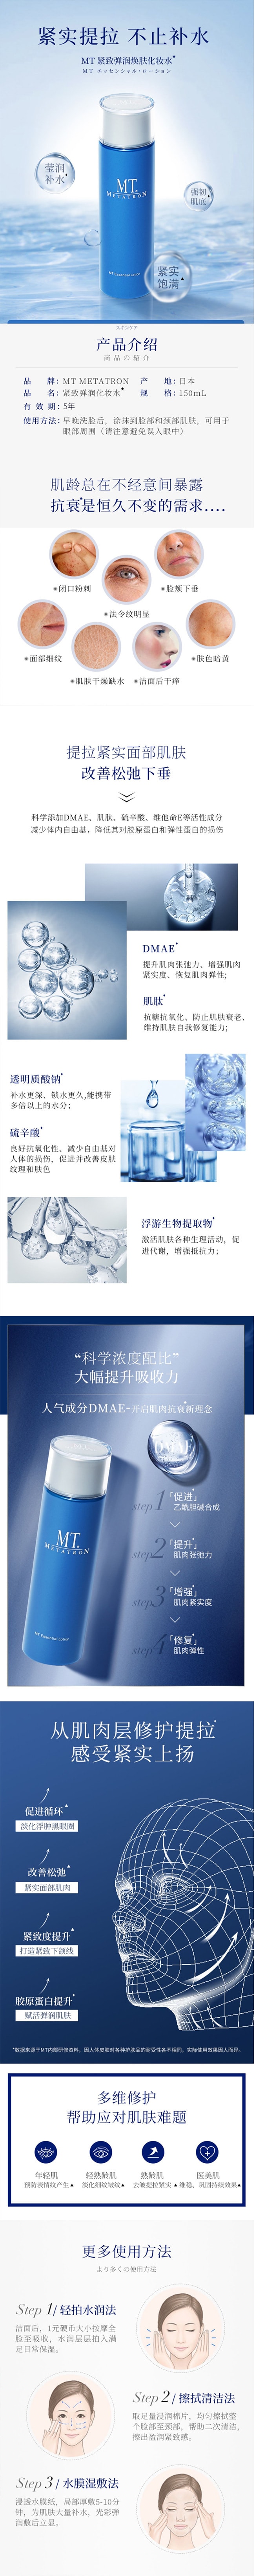 【日本直效郵件】MT METATRON 小藍瓶緊緻彈潤提拉抗老 貴婦護膚化妝水 150ml 李佳琦推薦